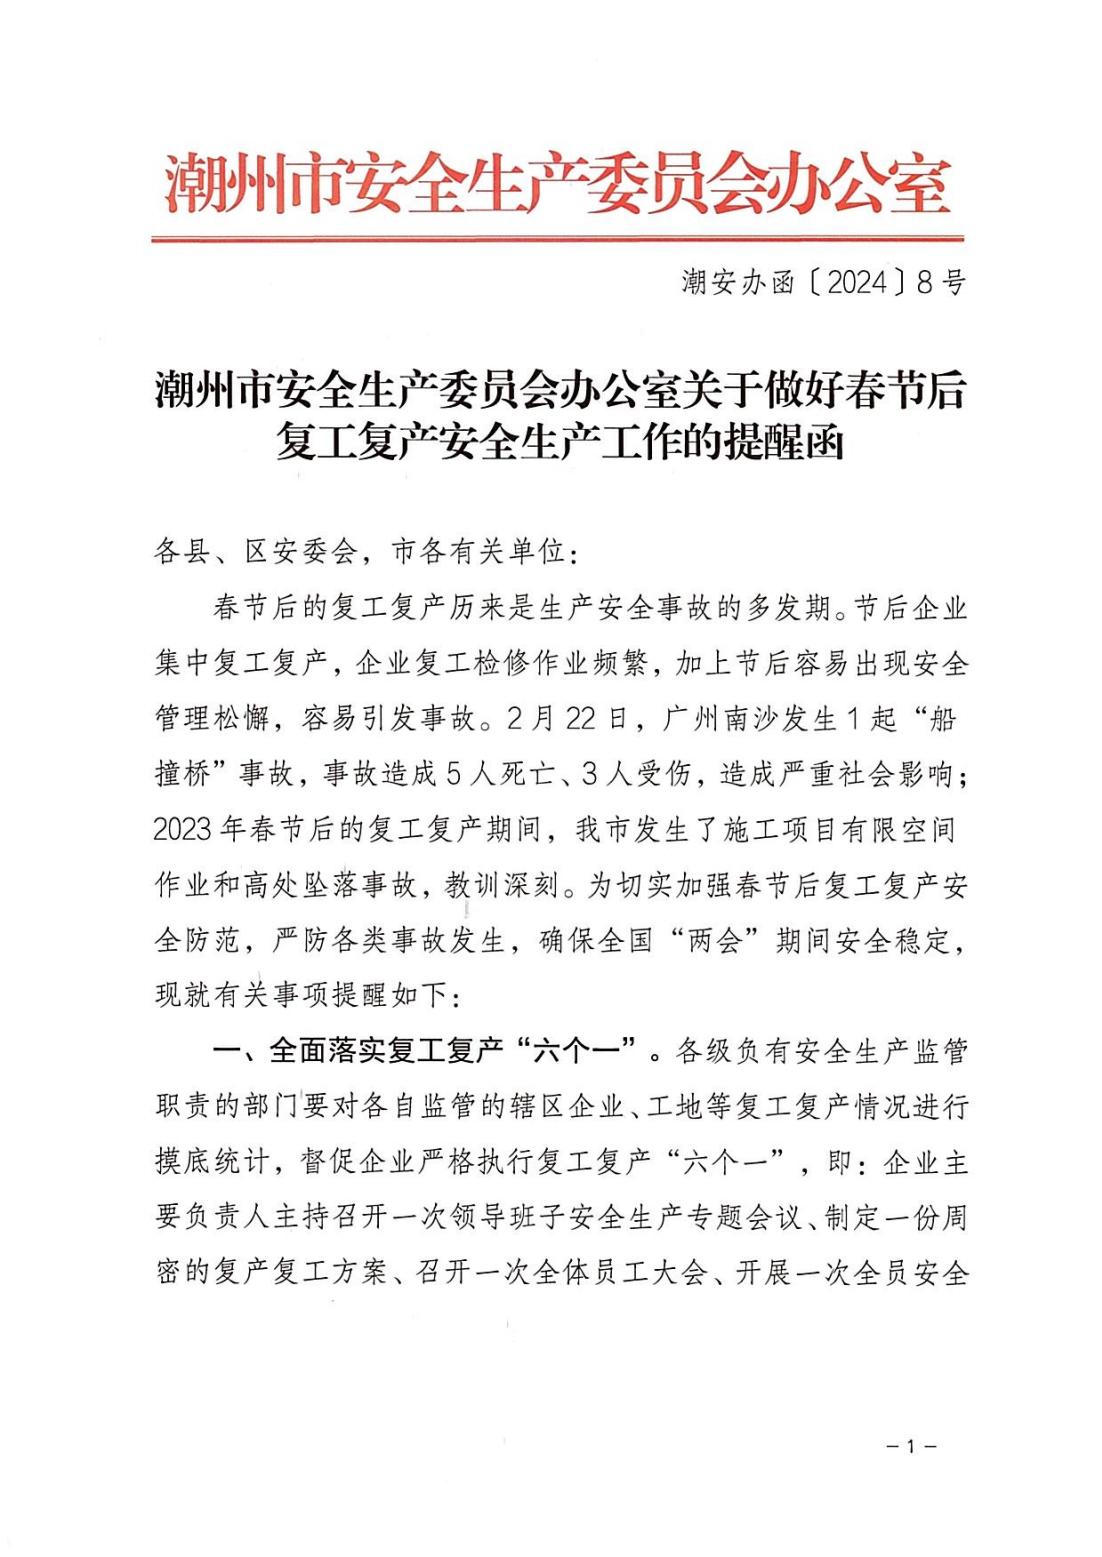 潮州市安全生产委员会办公室关于做好春节后复工复产安全生产工作的提醒函_00.png